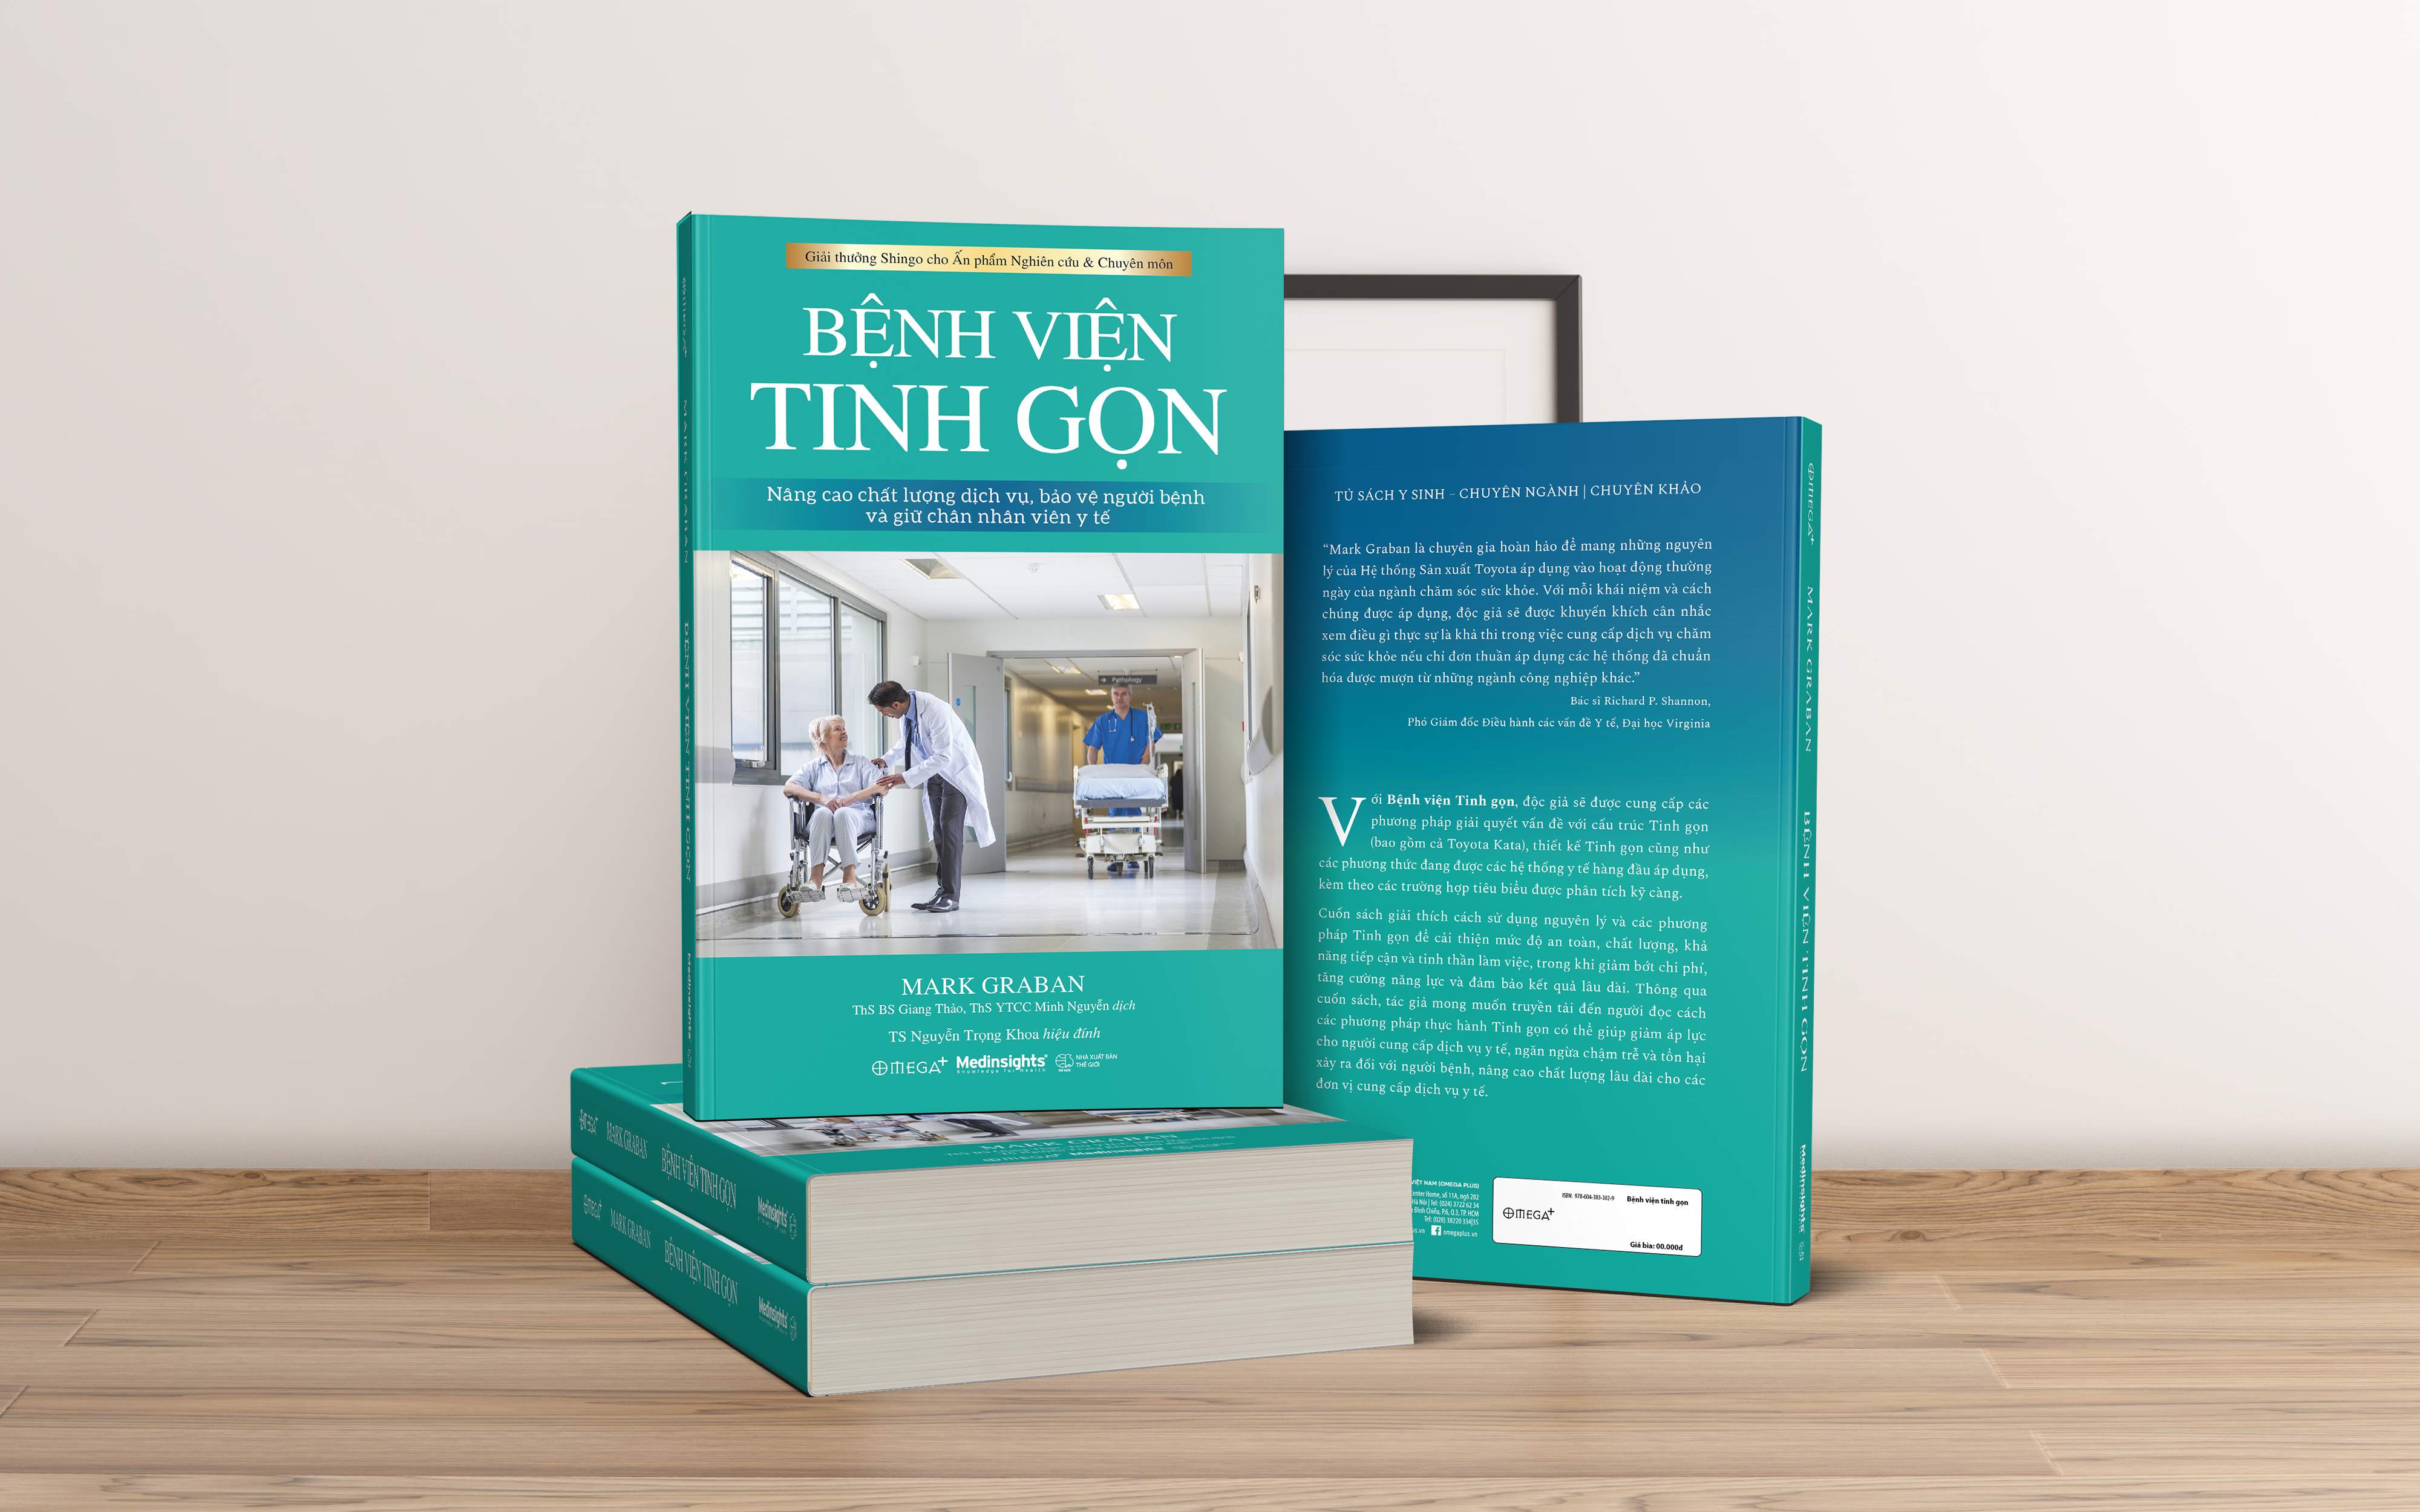 “Bệnh viện tinh gọn”- Cuốn sách đạt giải thưởng danh giá Shingo cho ấn phẩm Nghiên cứu và Chuyên môn - 2